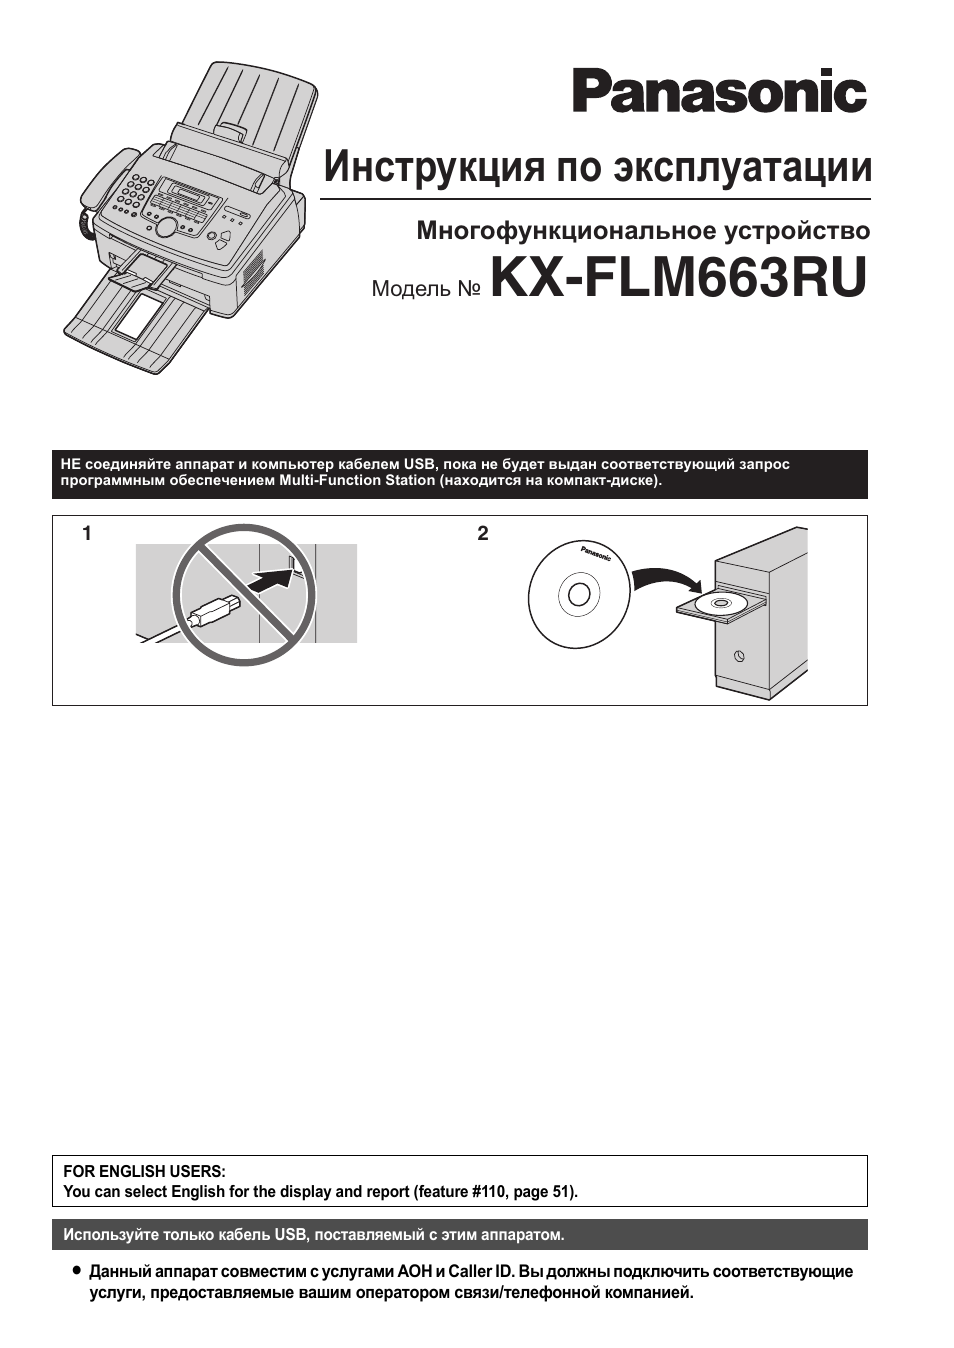 Инструкция по пользованию факсом panasonic model kh fpw111